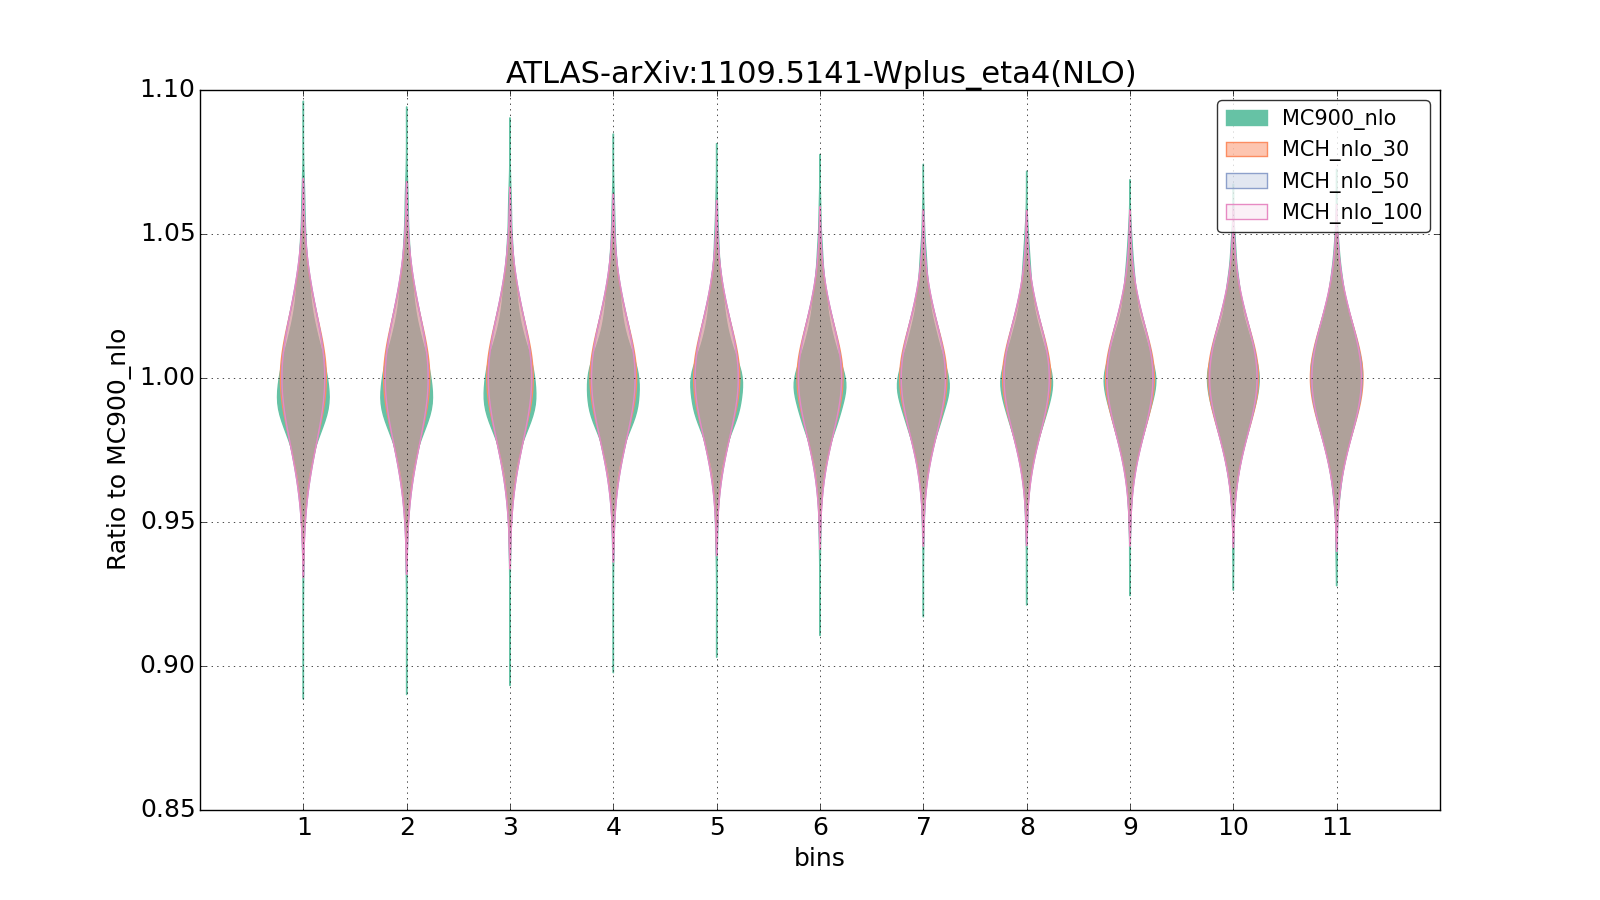 figure plots/pheno_new/NLO/violinplot_ATLAS-arXiv:11095141-Wplus_eta4(NLO).png